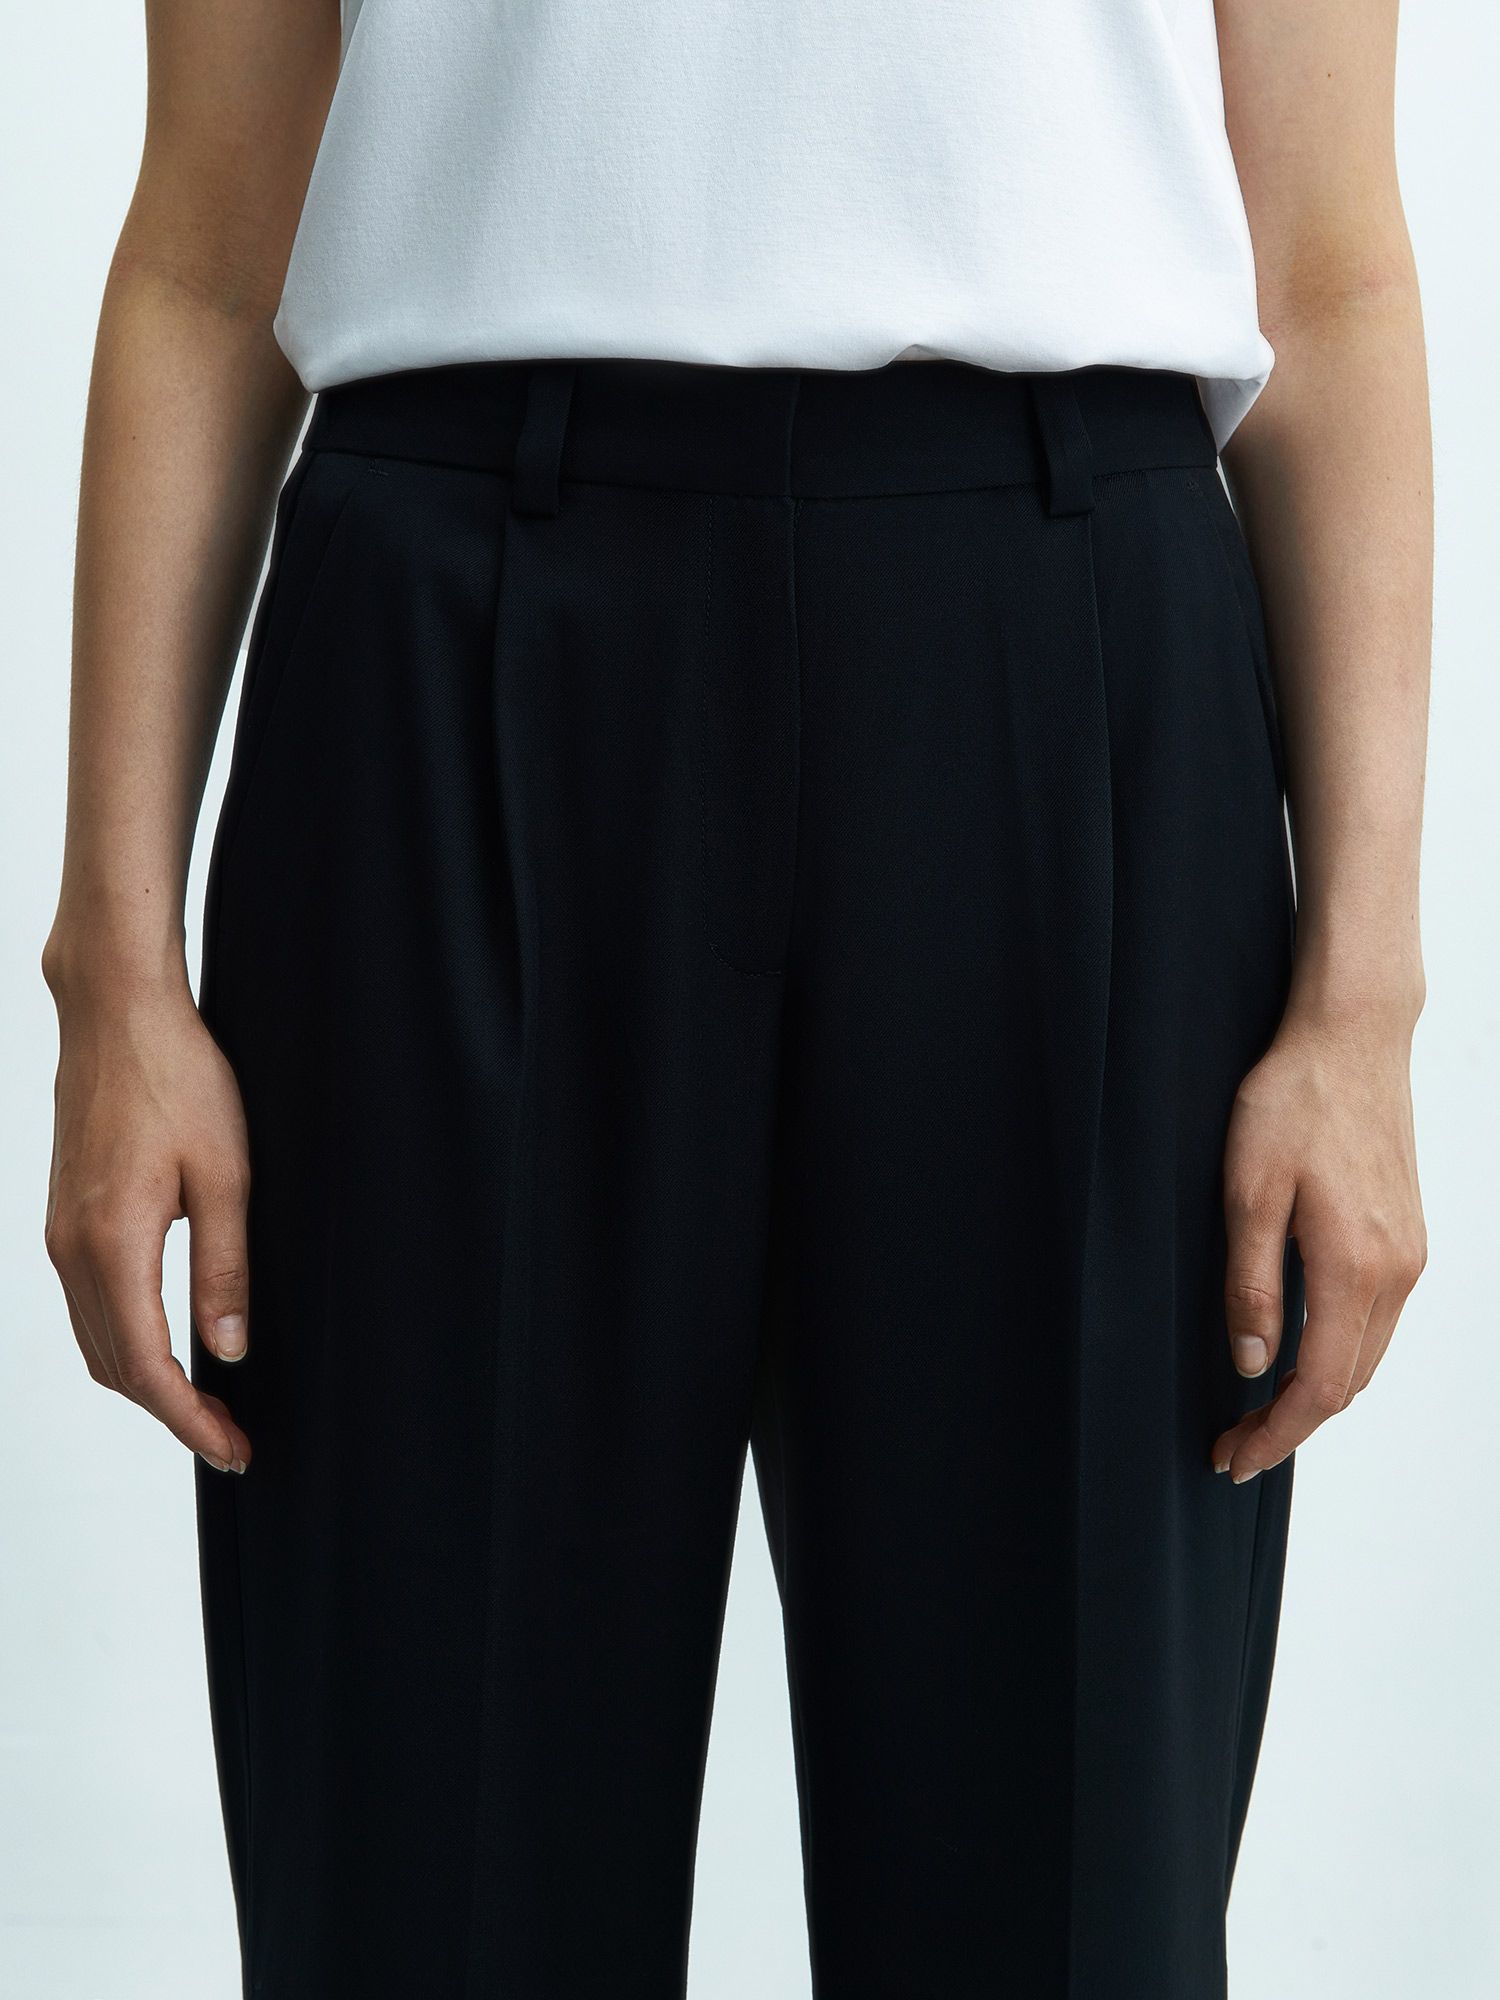 Женские брюки из переработанной поливискозы. Изображение 4